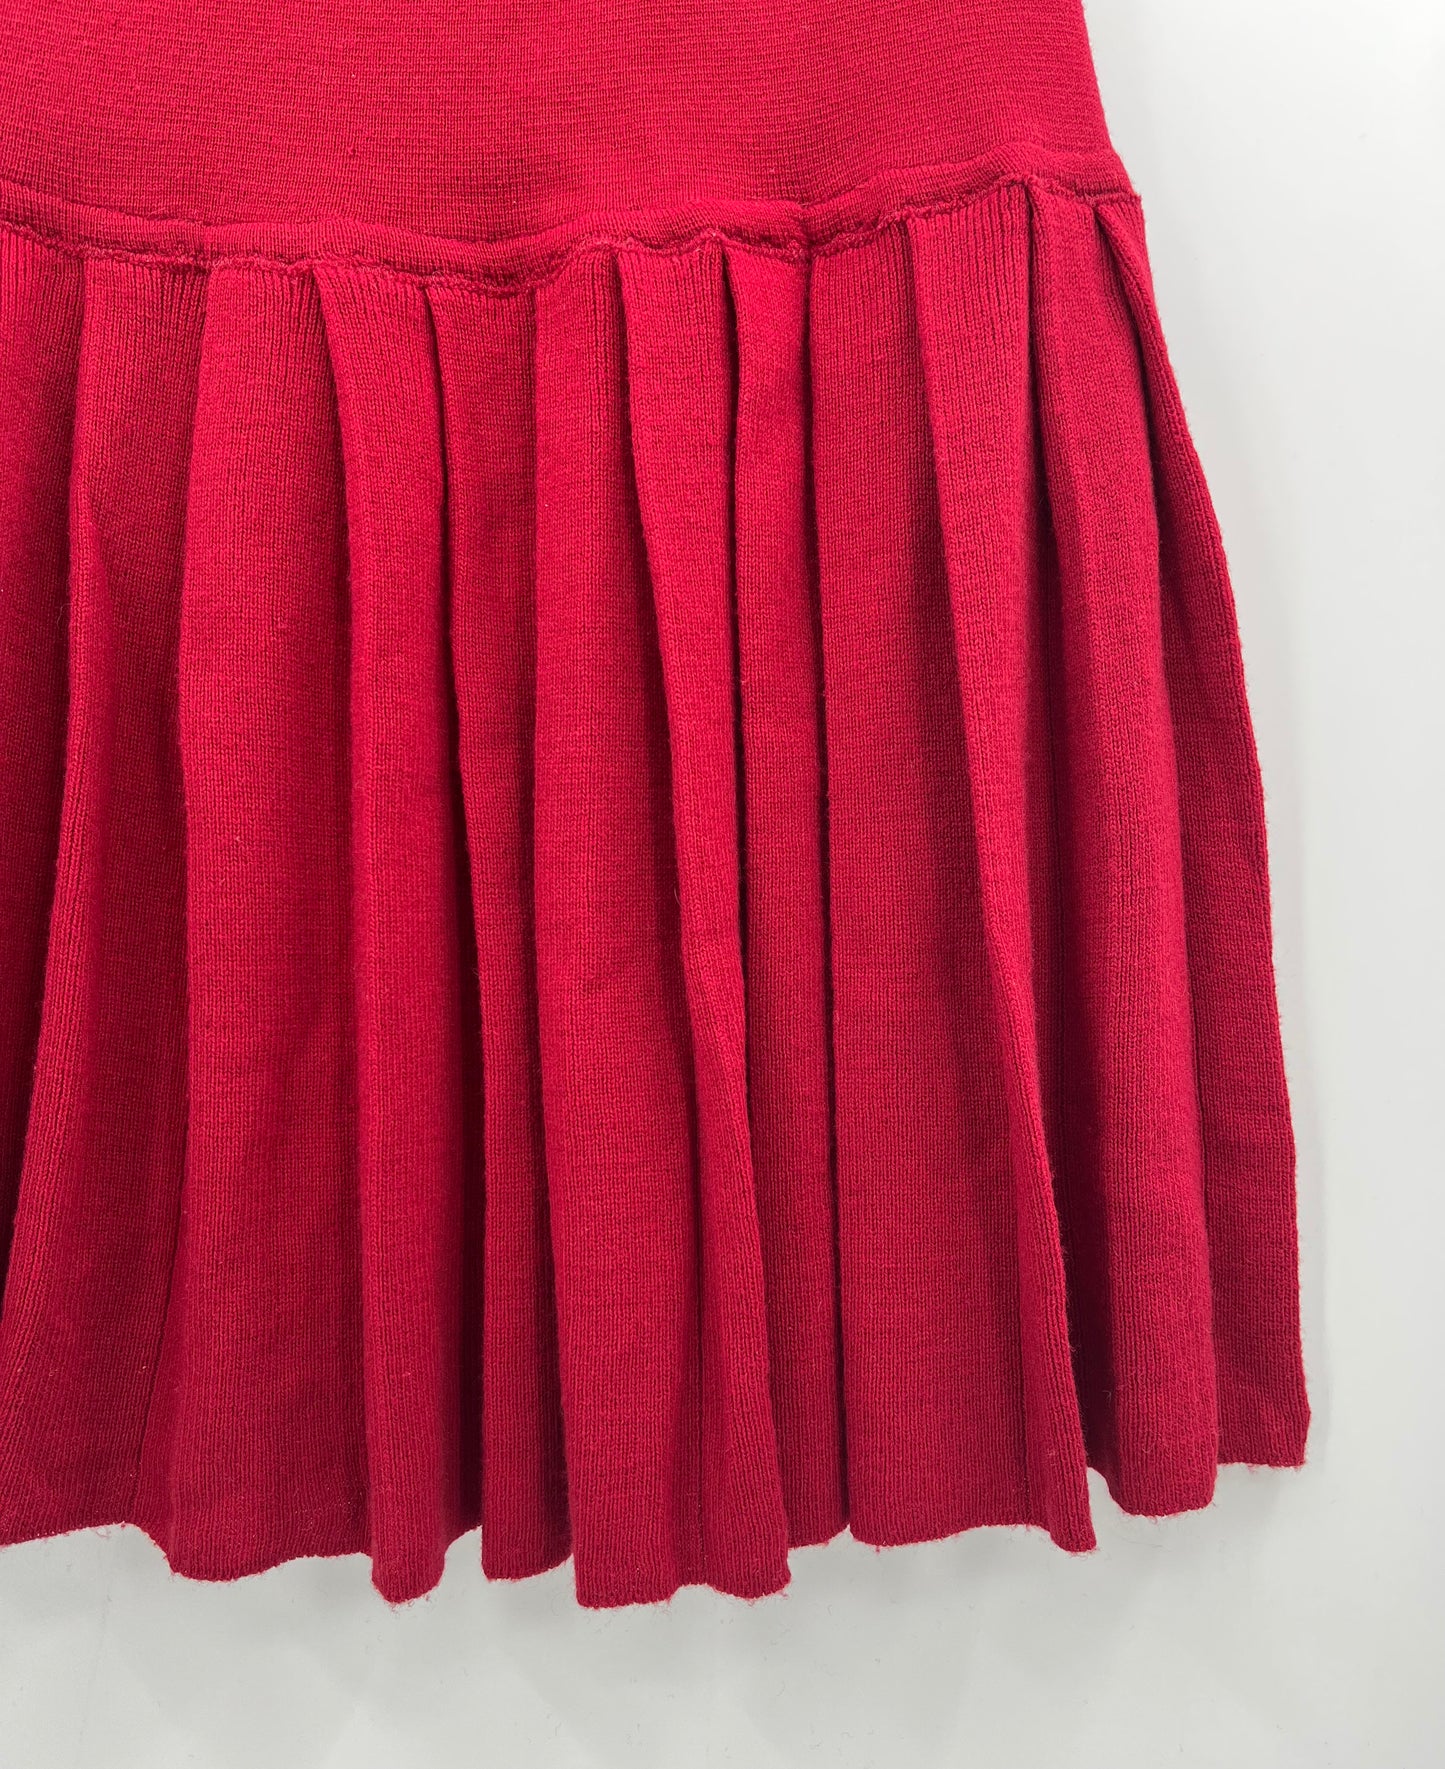 Arola, punainen neulehame, sis. villaa, 80-90-luku, vyöt.ymp. 72-90cm, kokoarvio 38-40